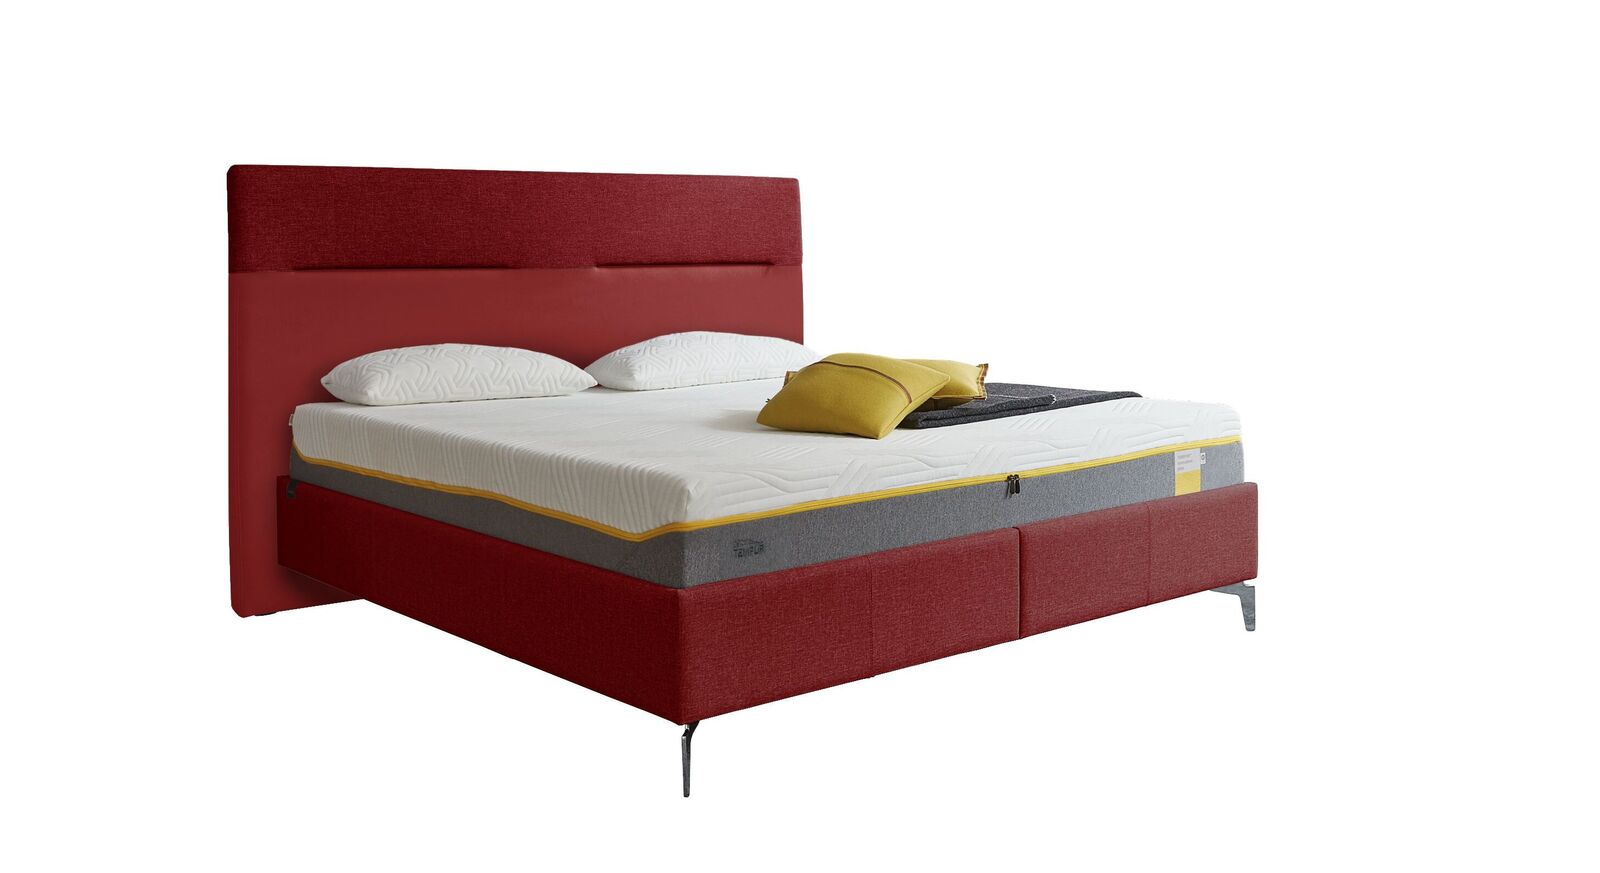 TEMPUR Bett Relax Texture mit Bezug in Webstoff und Kunstleder in Rot